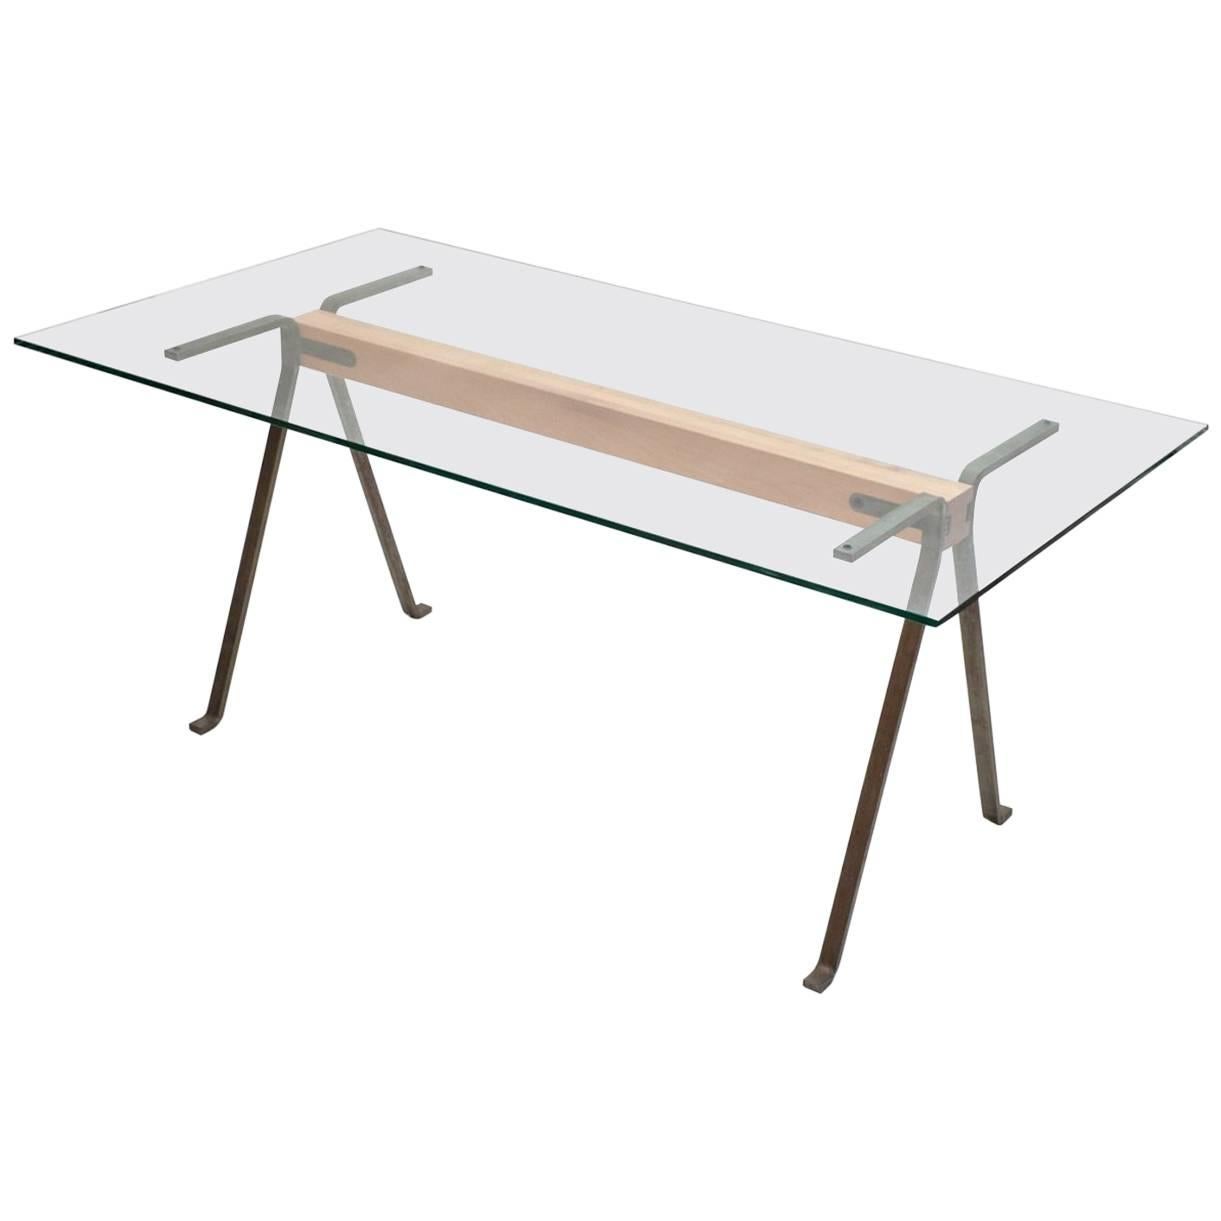 Table en bois de tilleul et acier avec plateau en verre trempé « Frame » de E. Mari pour Driade